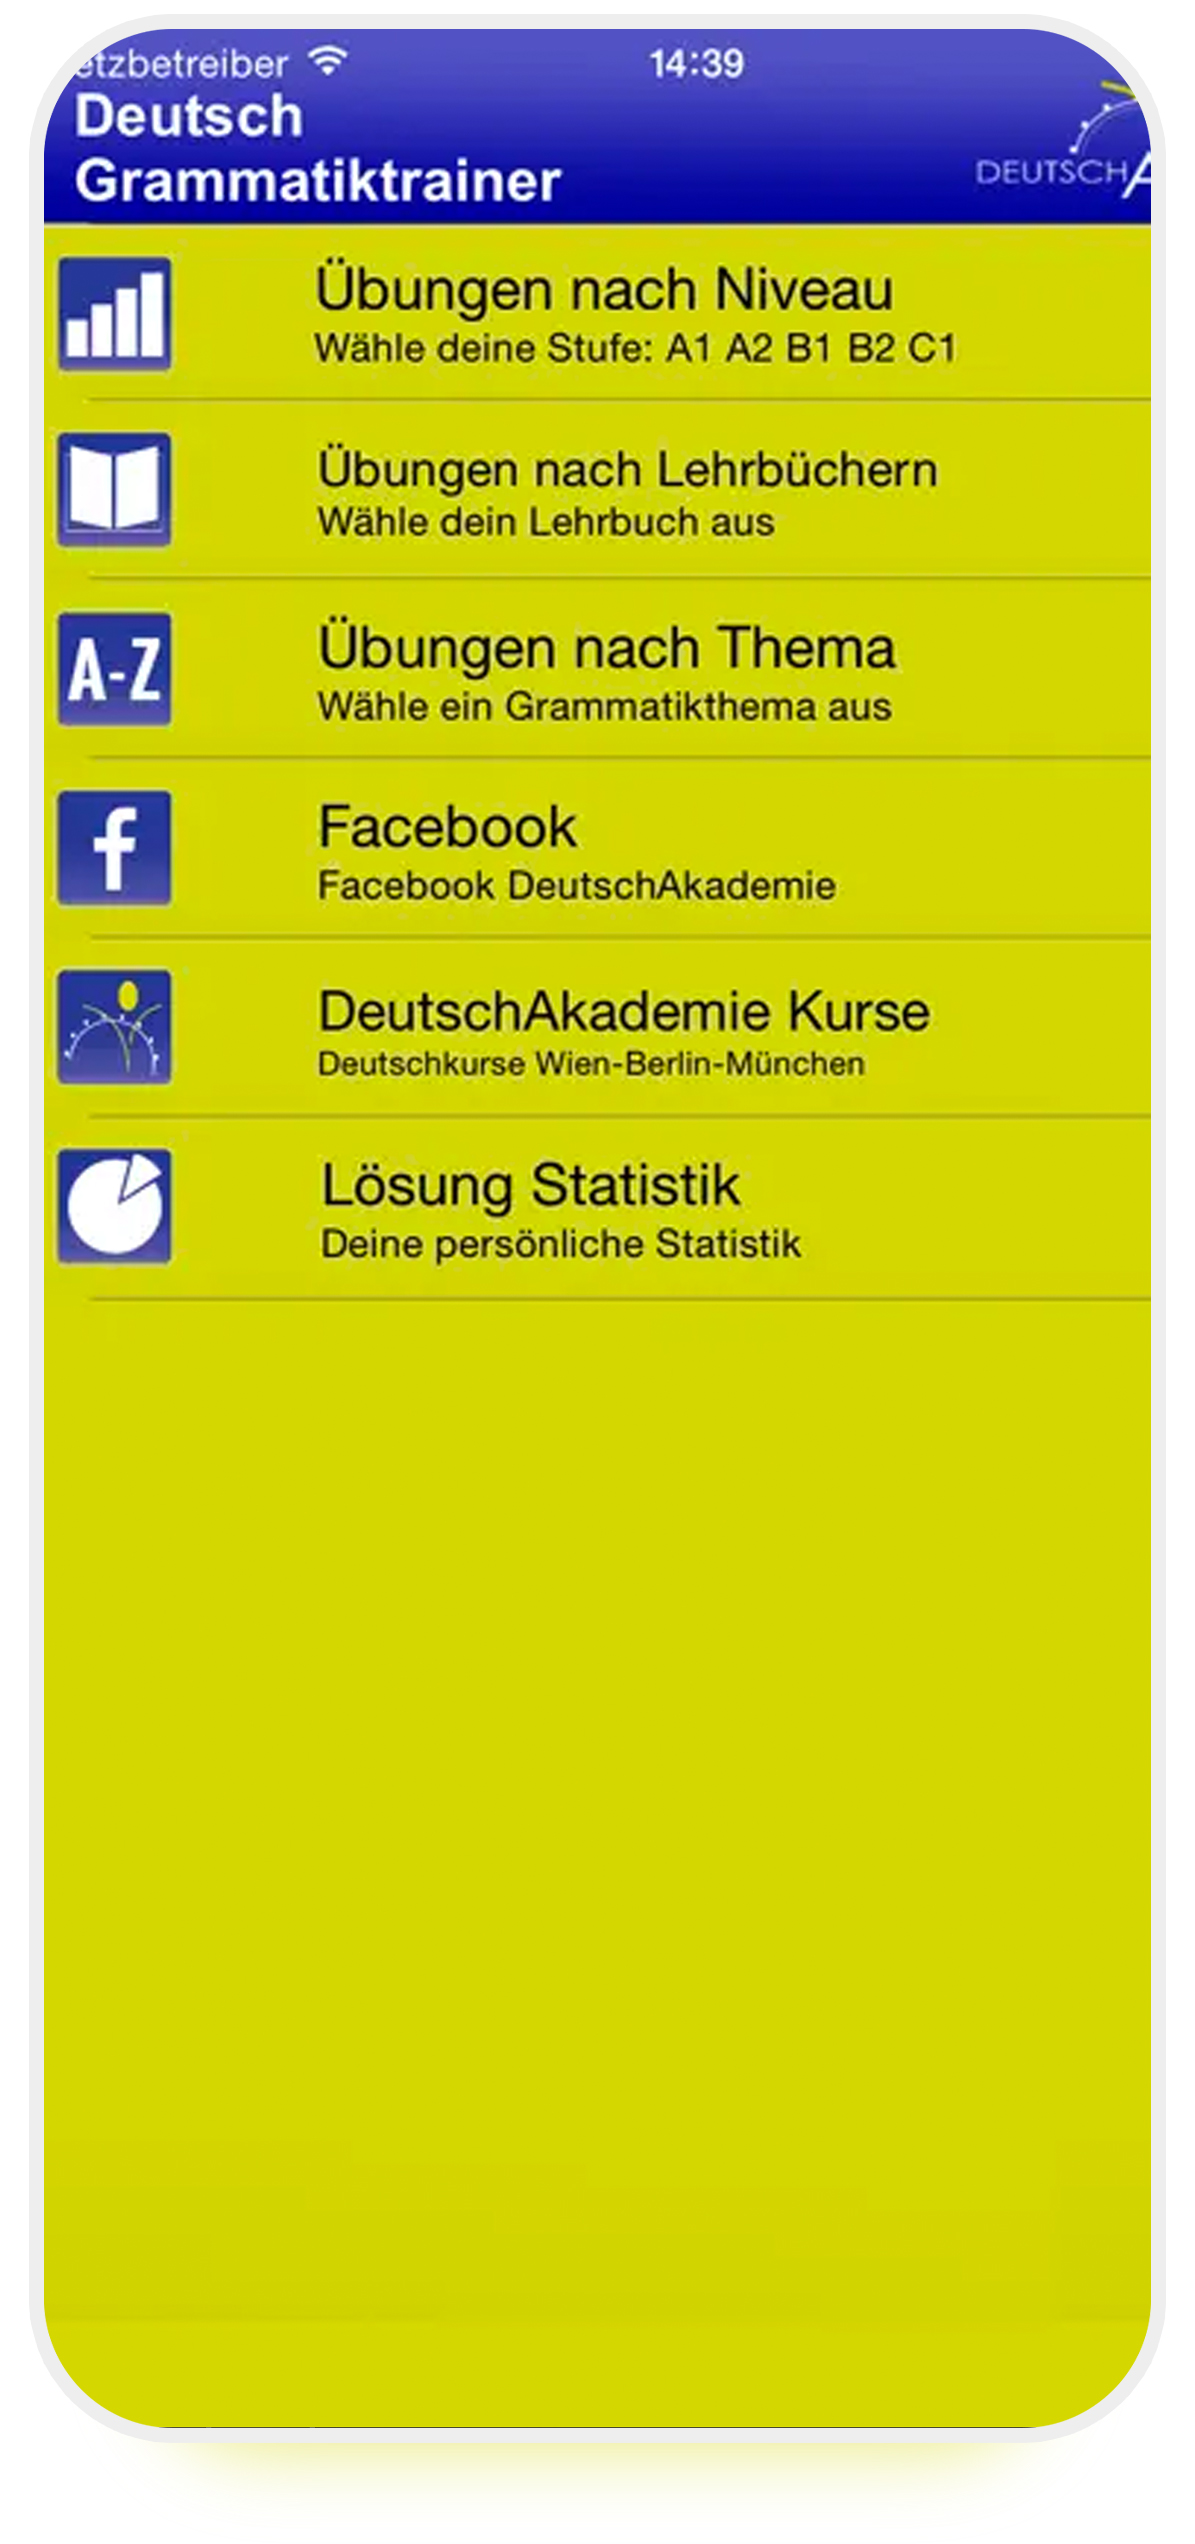 دوتچ آکادمی (DeutschAkademie) بهترین اپ آموزش زبان آلمانی برای اندروید و iOS